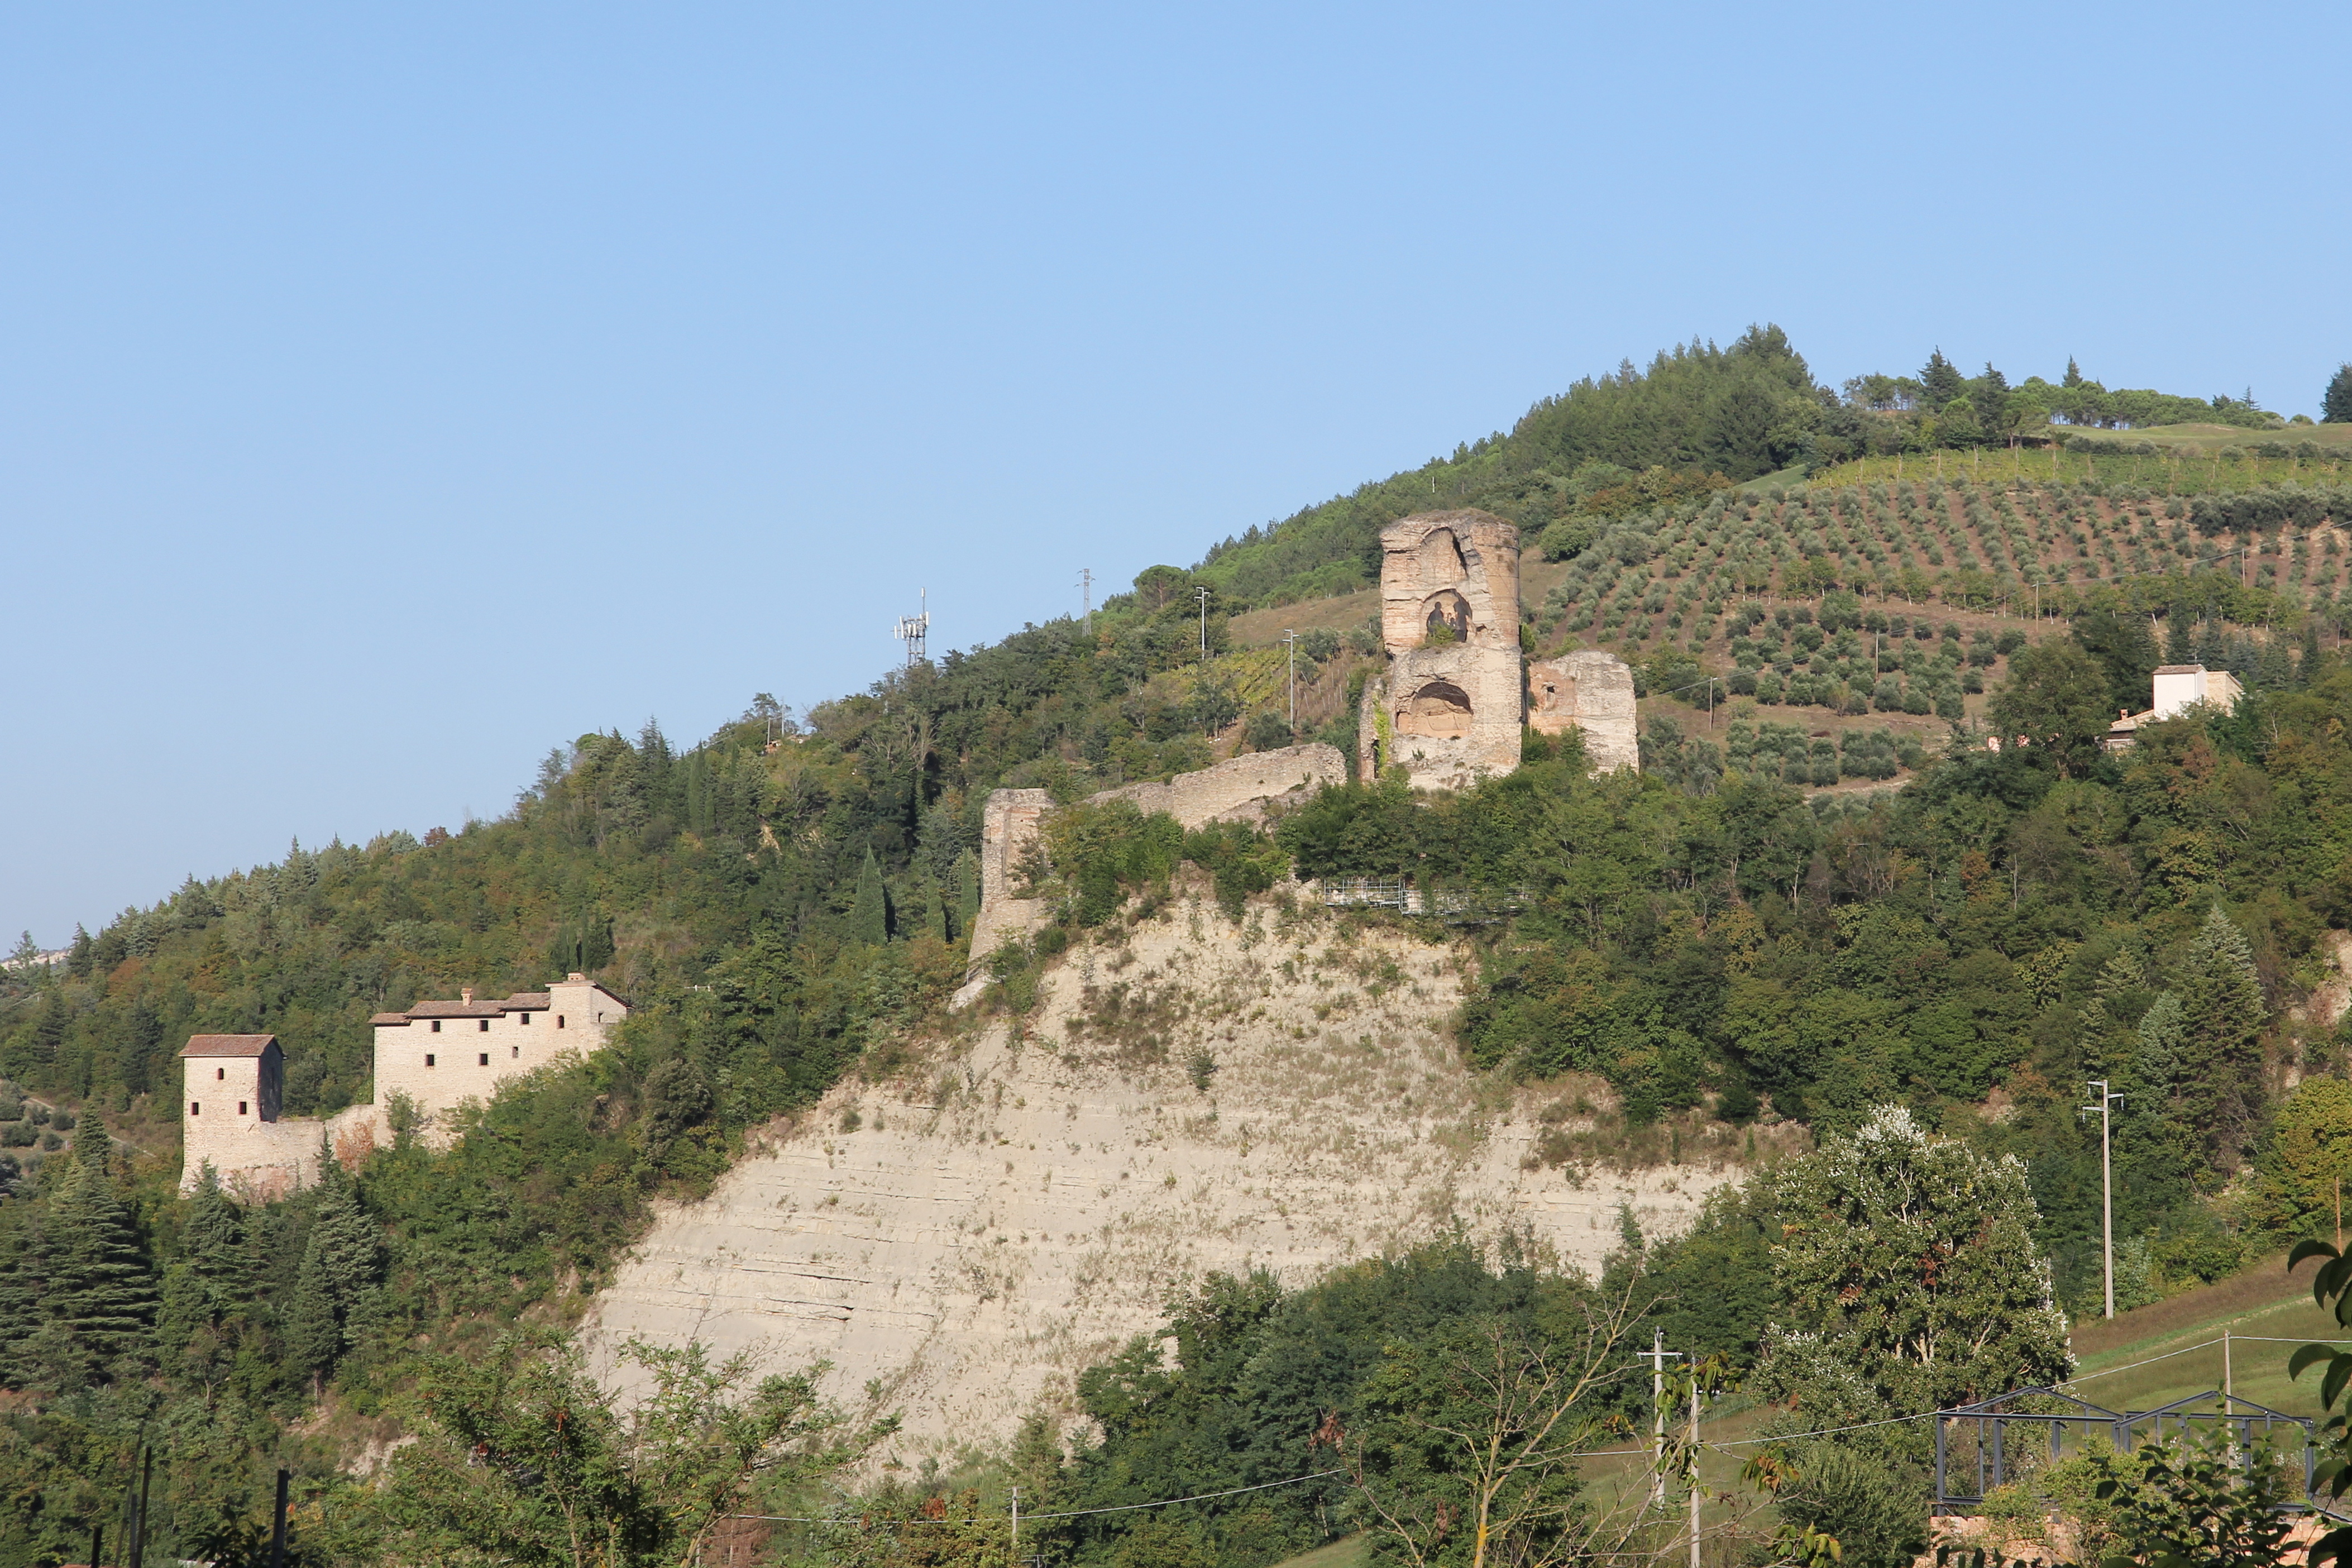 photo: https://upload.wikimedia.org/wikipedia/commons/1/15/Modigliana%2C_rocca_dei_Conti_Guidi_%2802%29.jpg